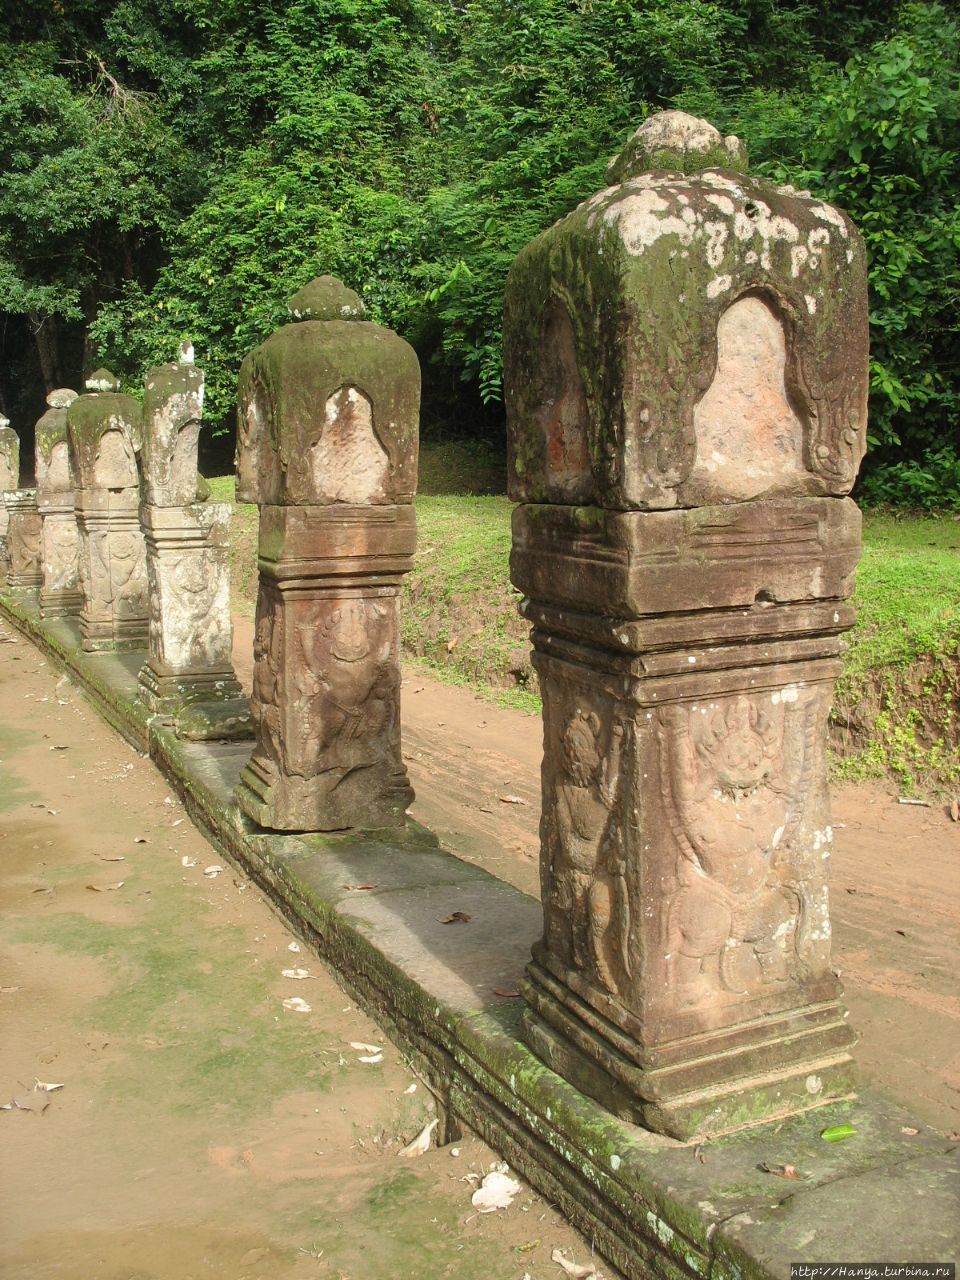 Оградительные столбики вдоль водоема, ведущего к храму Пре-Кхан. Внизу изображены птицы-гаруды, а наверху ниши, в которых раньше было изображение Будды